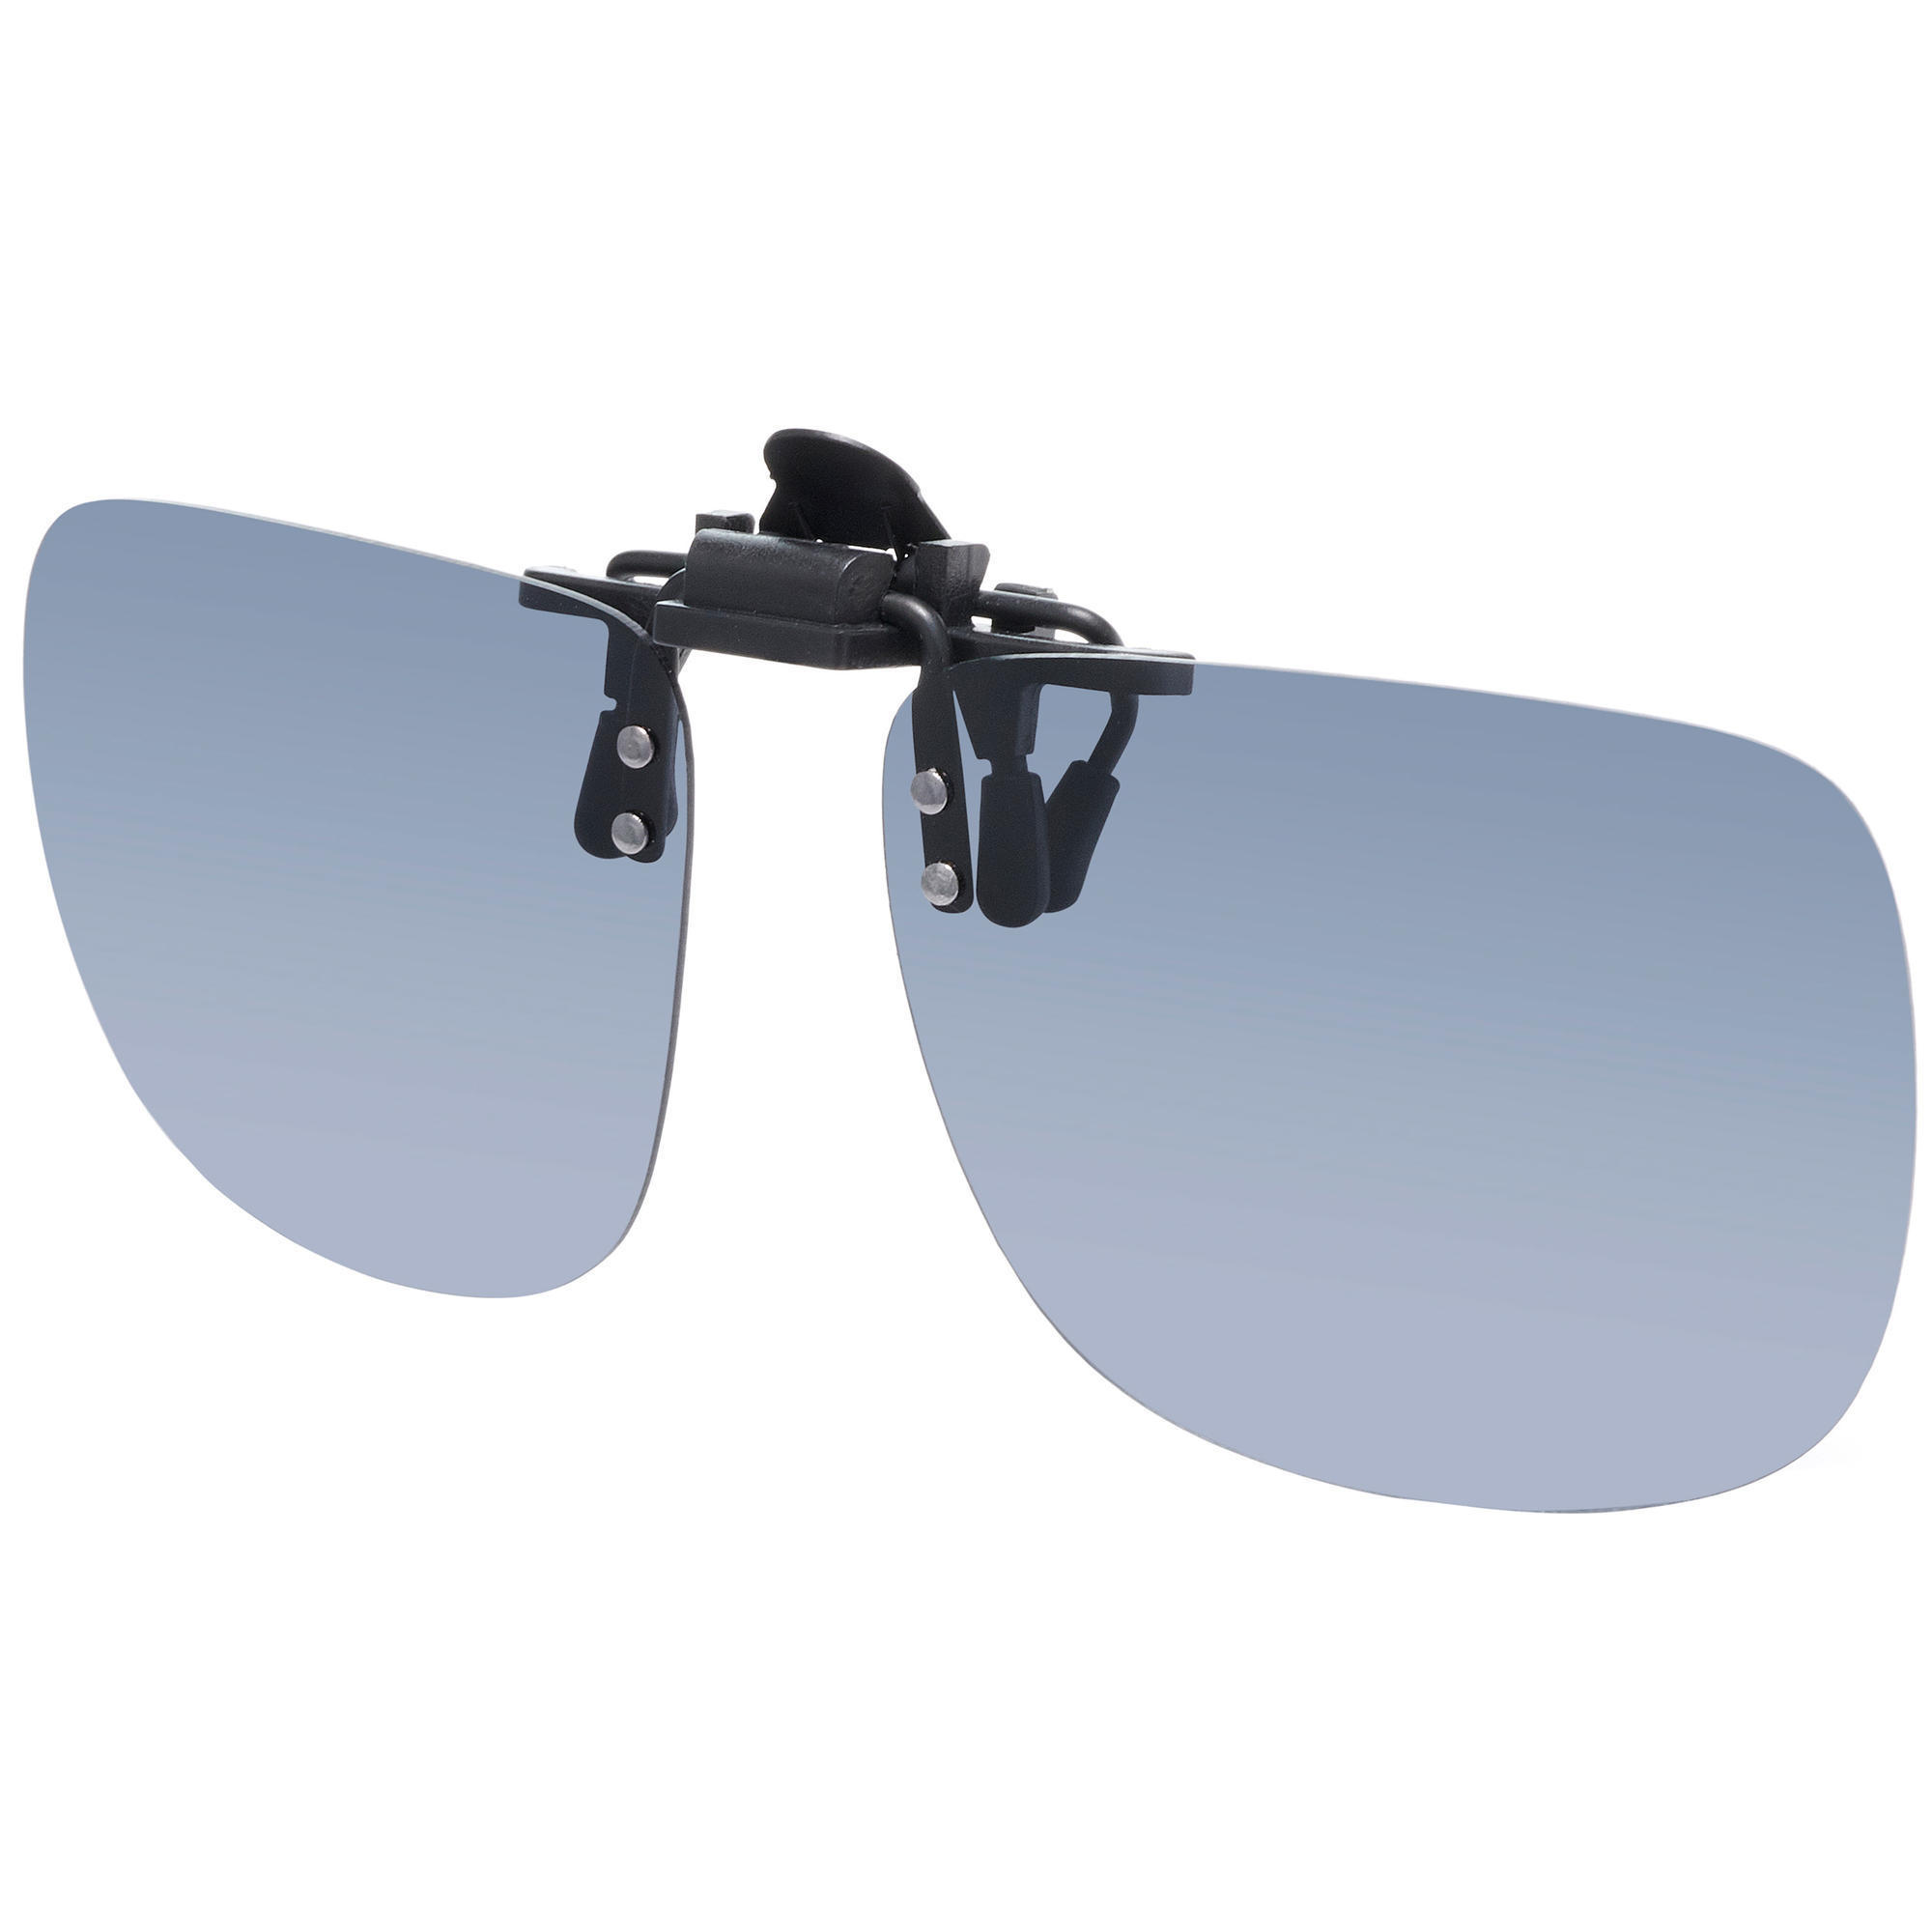 langlebig und weich Ukes Premium-Sonnenbrillenband sicherer Sitz für Ihre Brille und Brillen mit schwimmendem Neopren-Material 